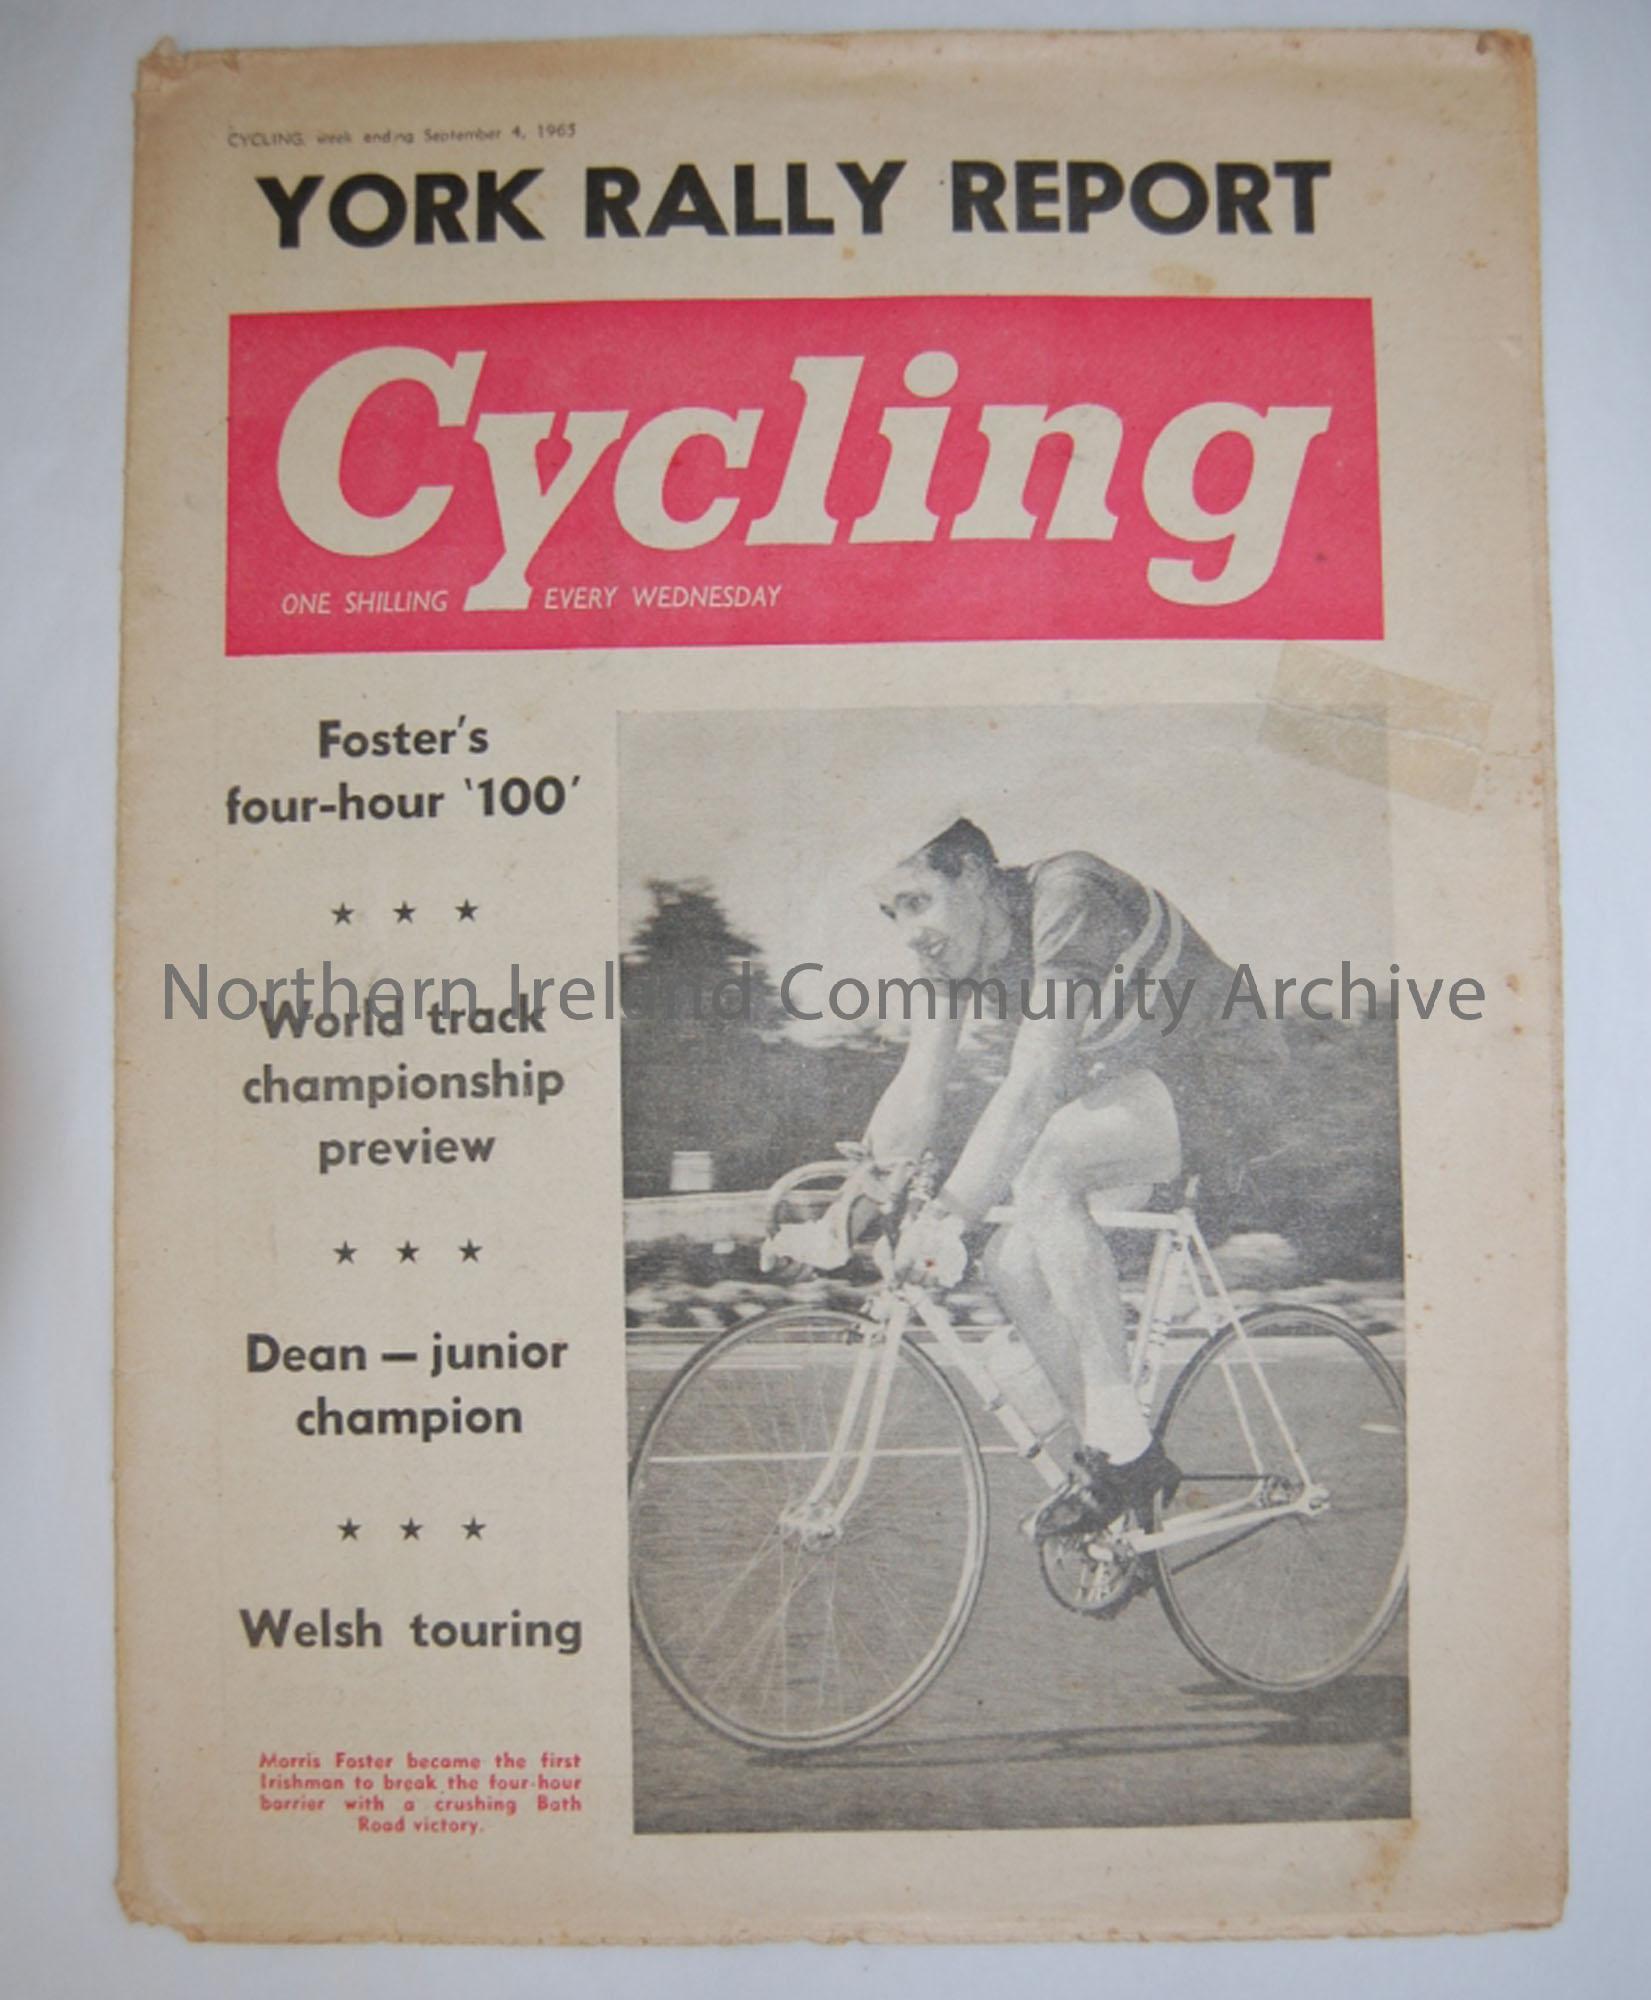 Cycling, week ending September 4, 1965